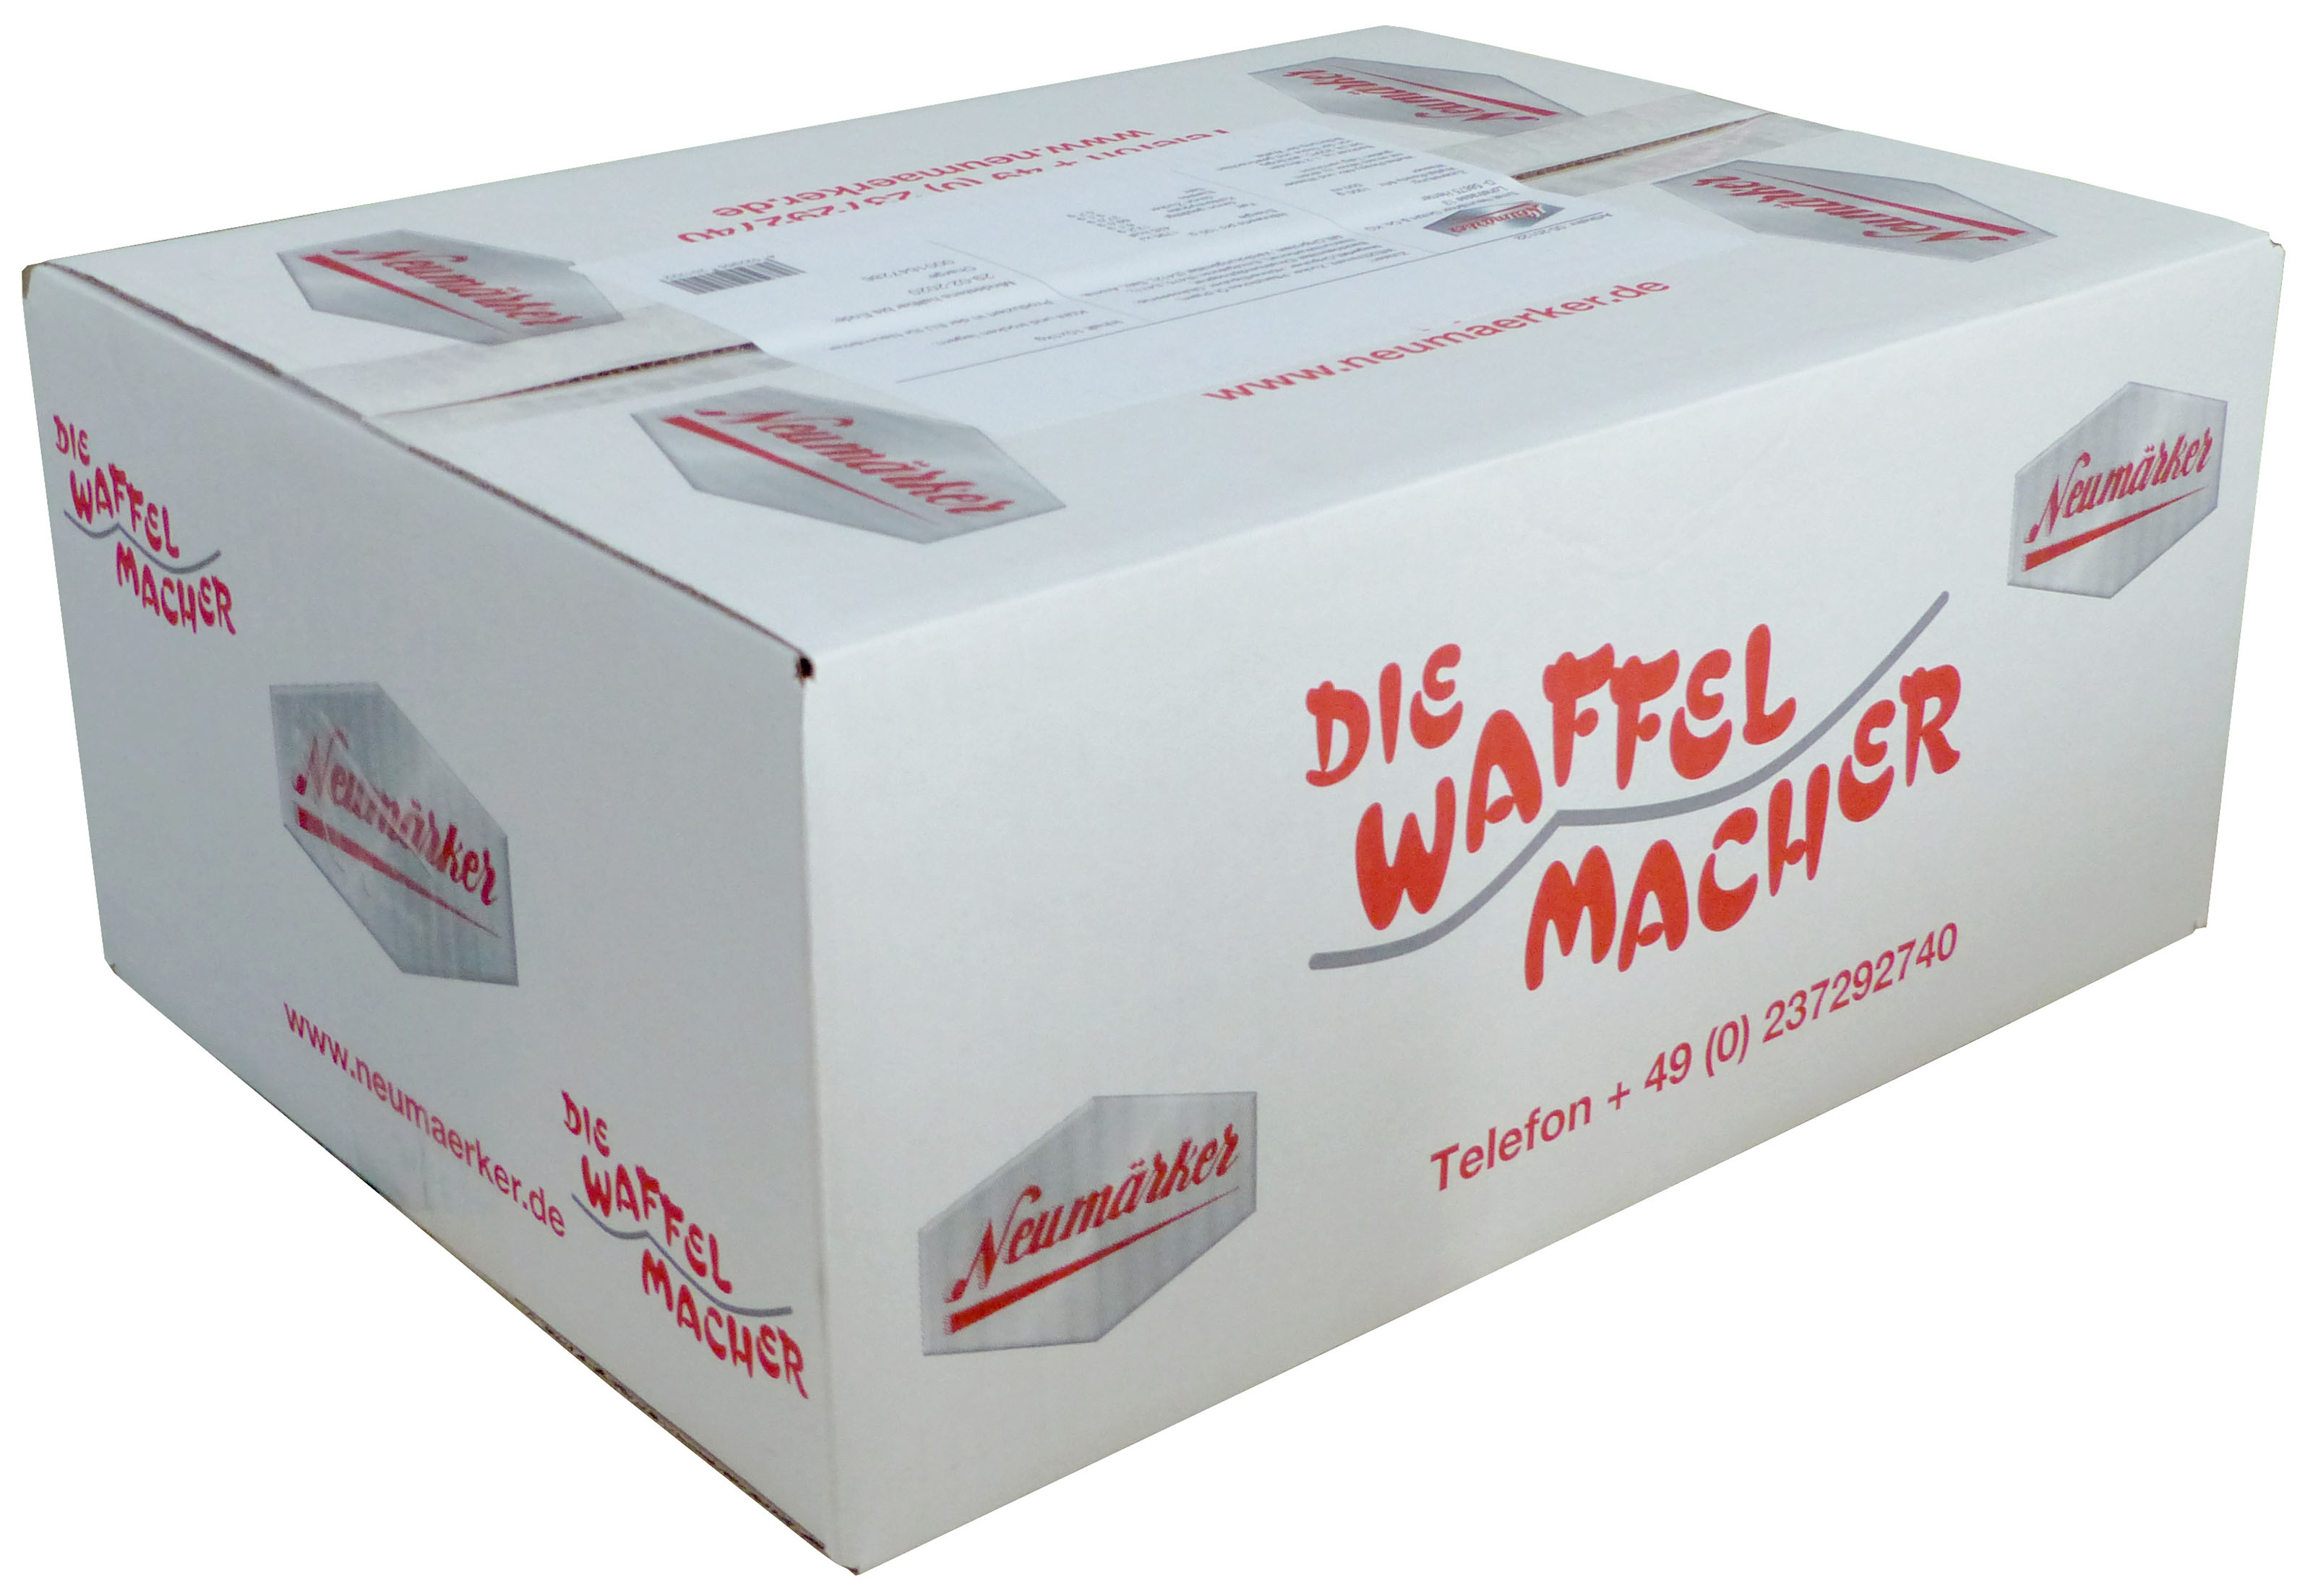 Neumärker Waffomix Karton à 10 kg (10x 1 kg)